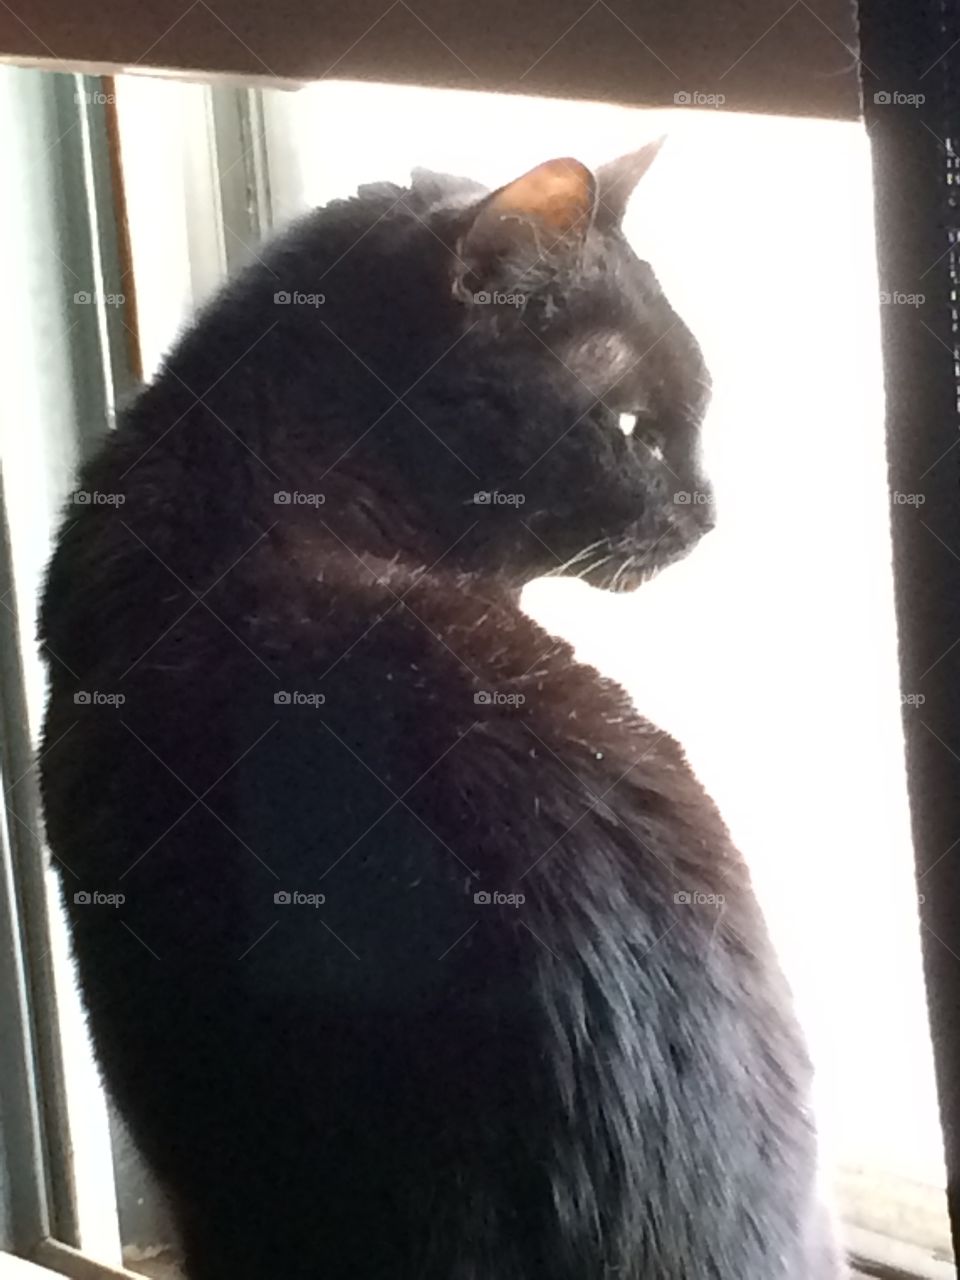 Sheba in the window.